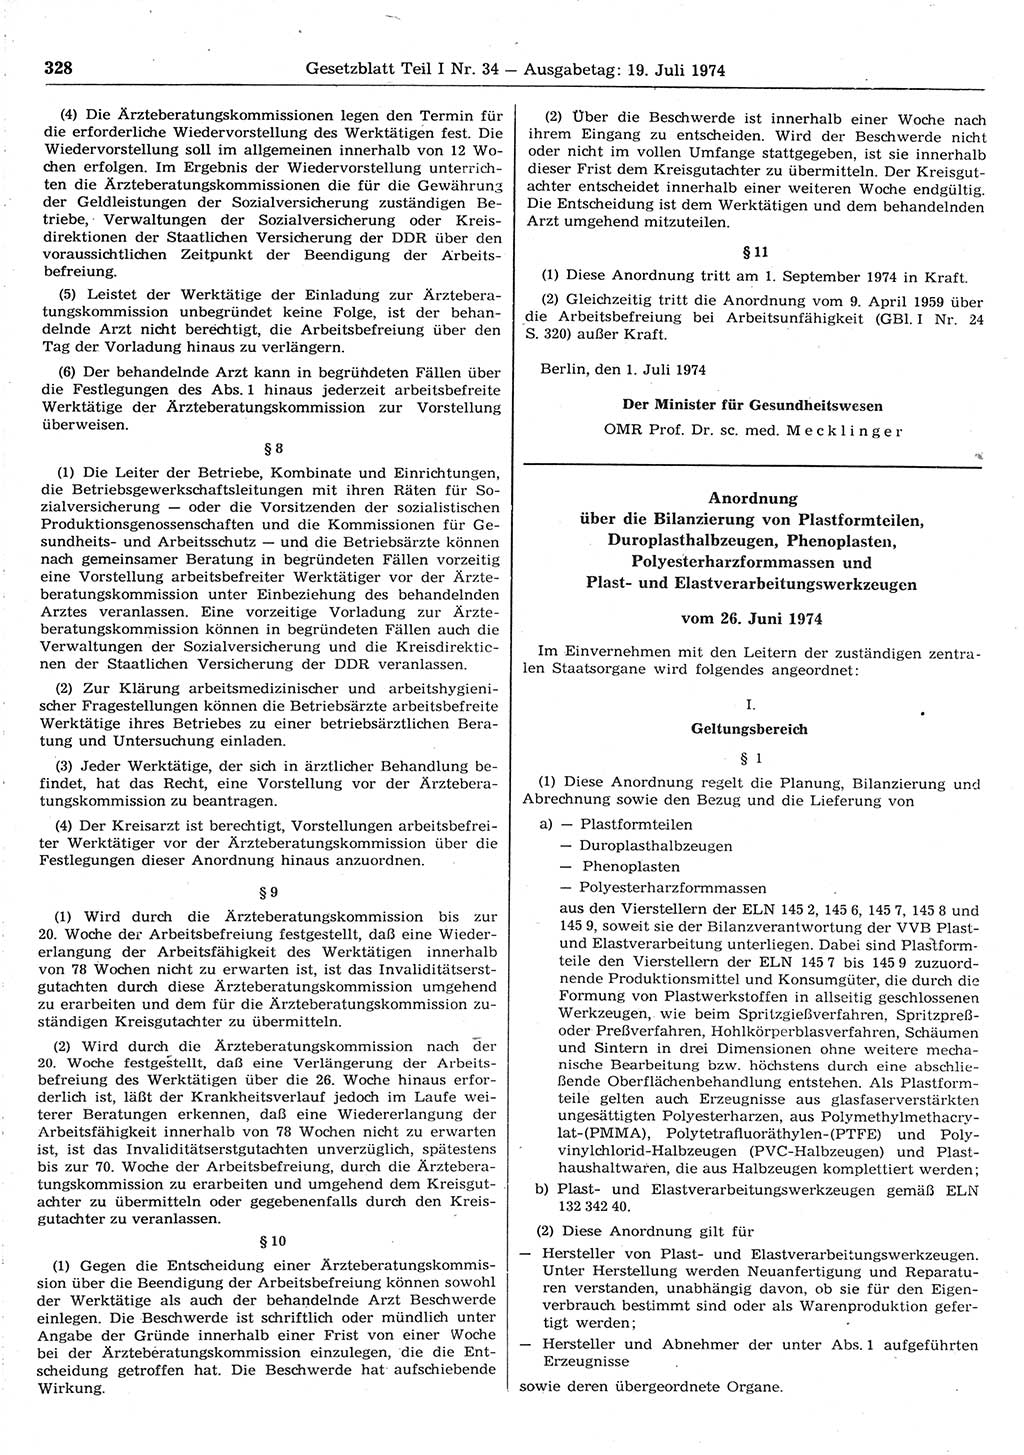 Gesetzblatt (GBl.) der Deutschen Demokratischen Republik (DDR) Teil Ⅰ 1974, Seite 328 (GBl. DDR Ⅰ 1974, S. 328)